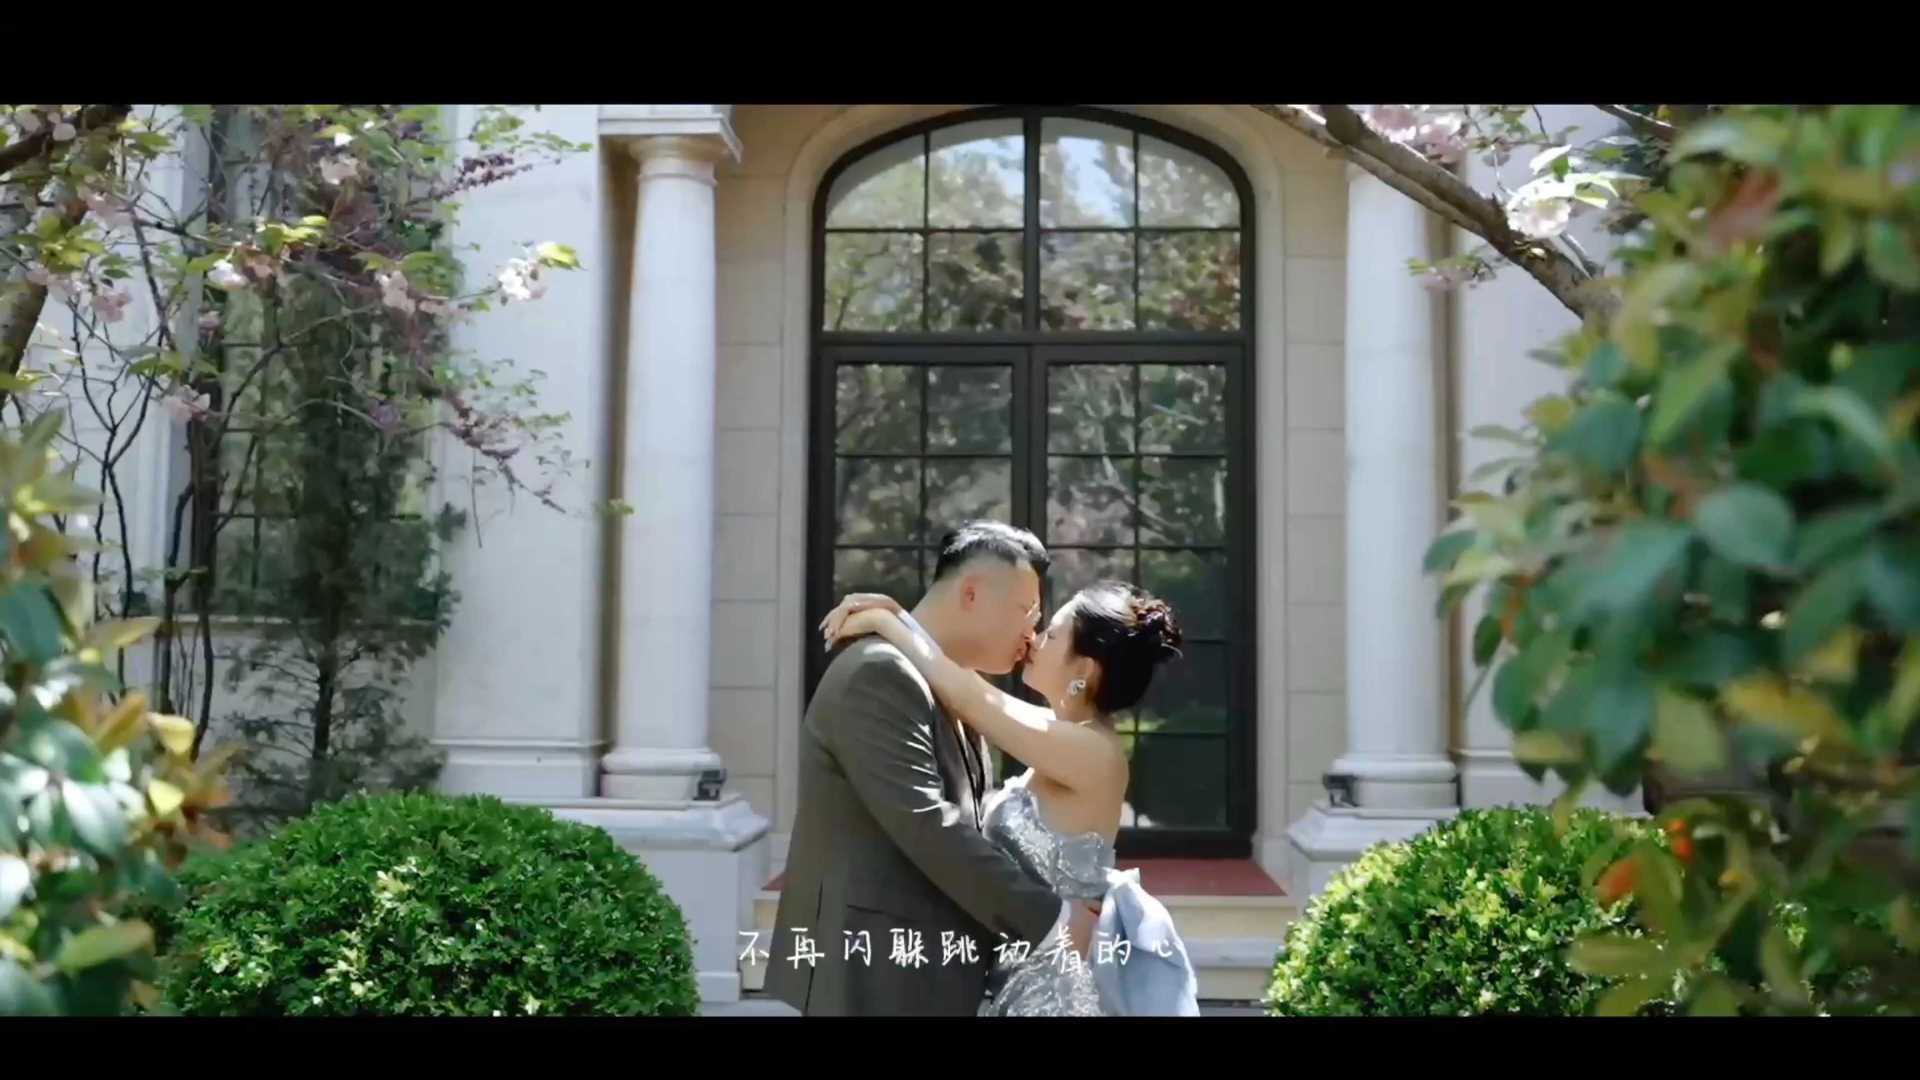 「摩方电影」#王晓辉&杨梦琪#婚礼快剪